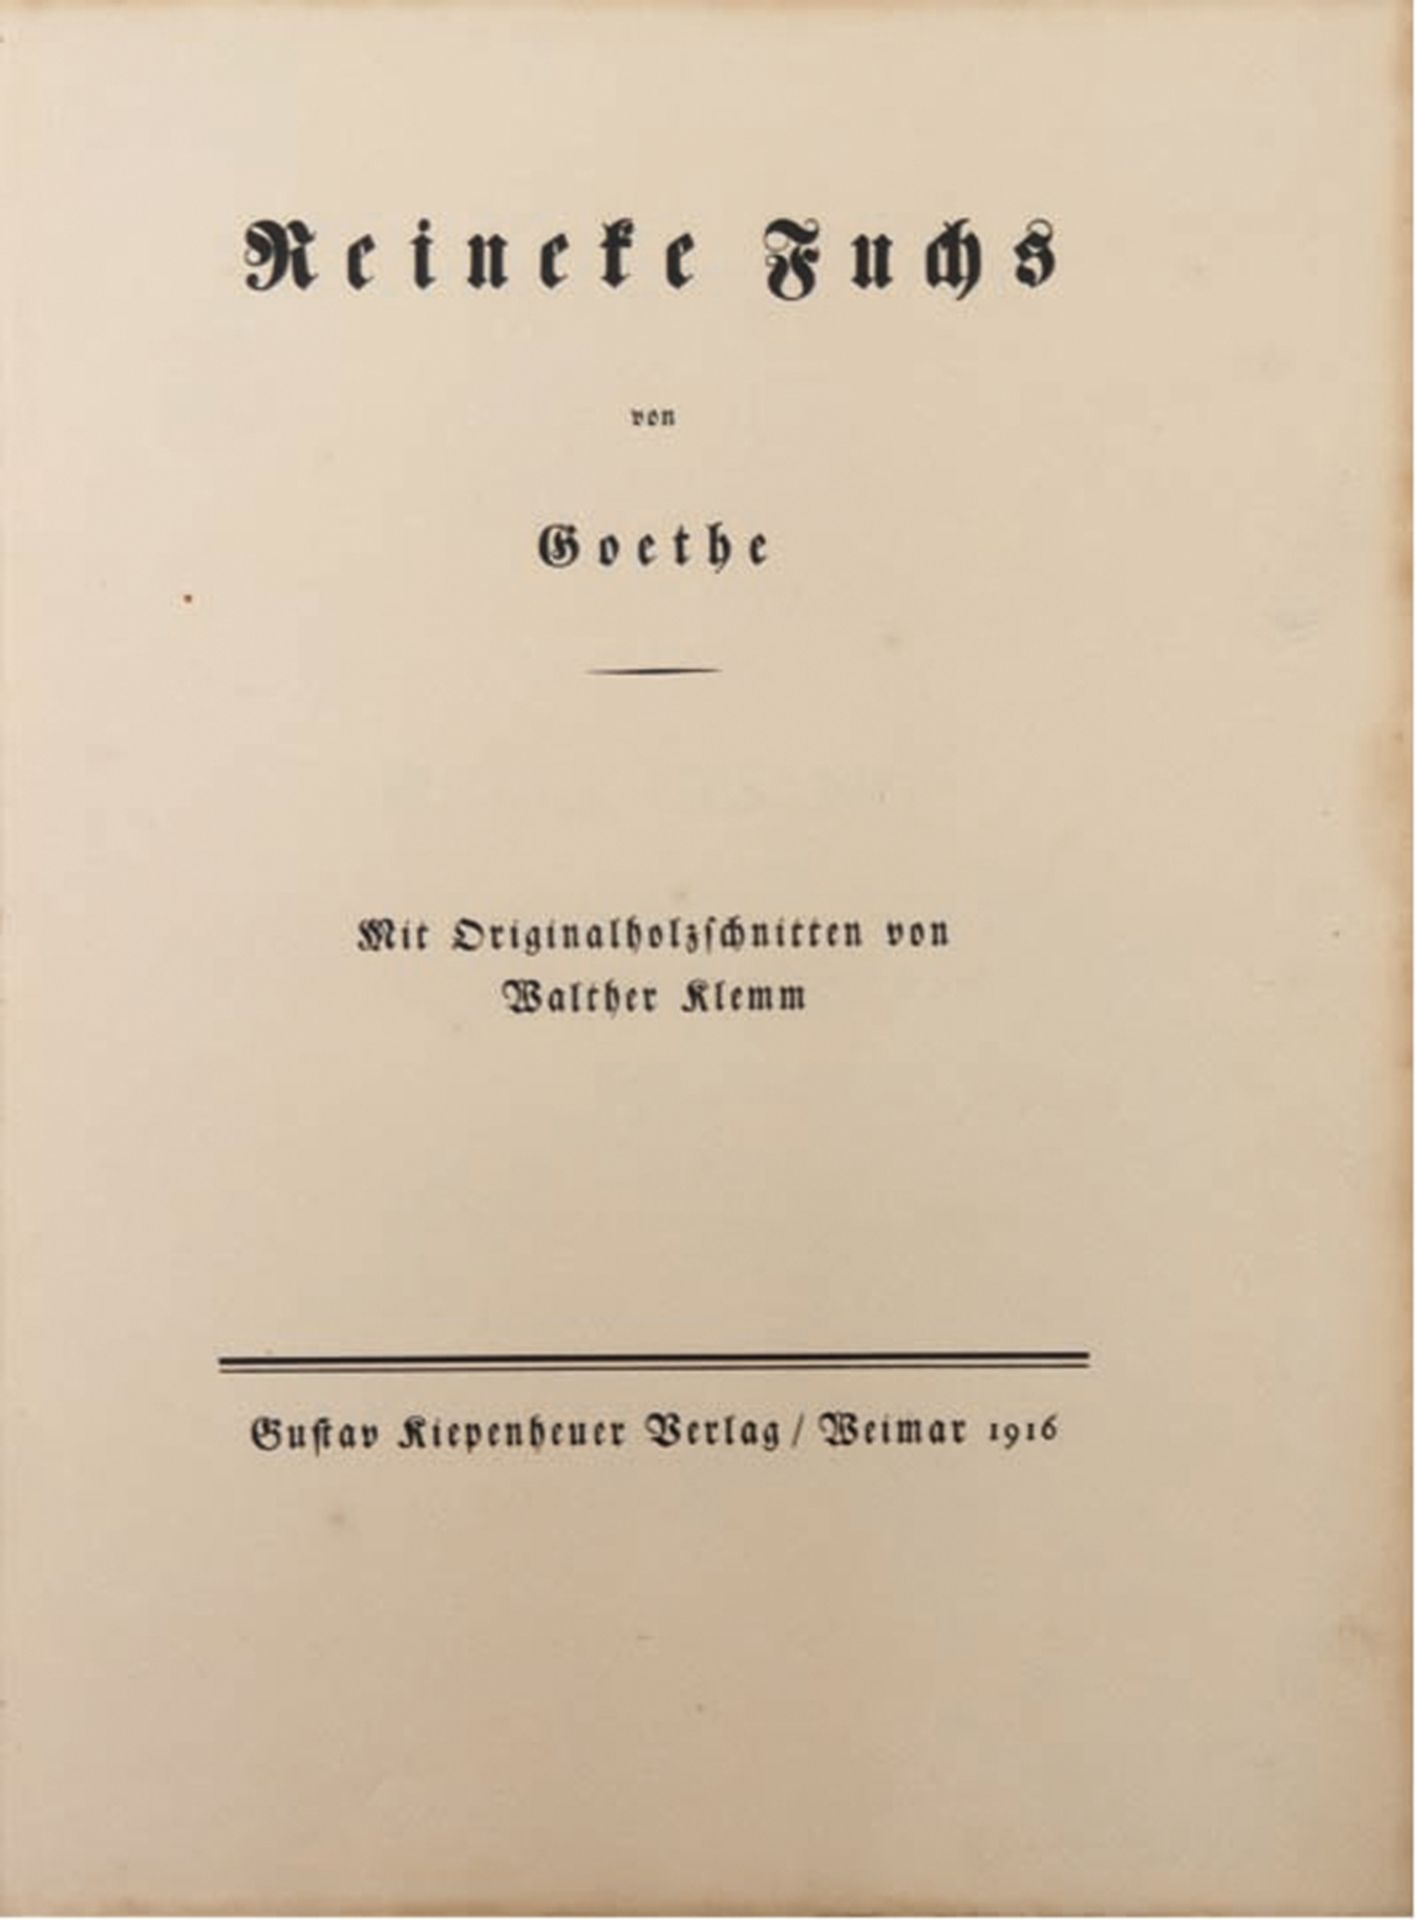 "Reinecke Fuchs", von Goethe, mit 47 handmonogrammierten Holzschnitten von Walther Klemm (1883-1957